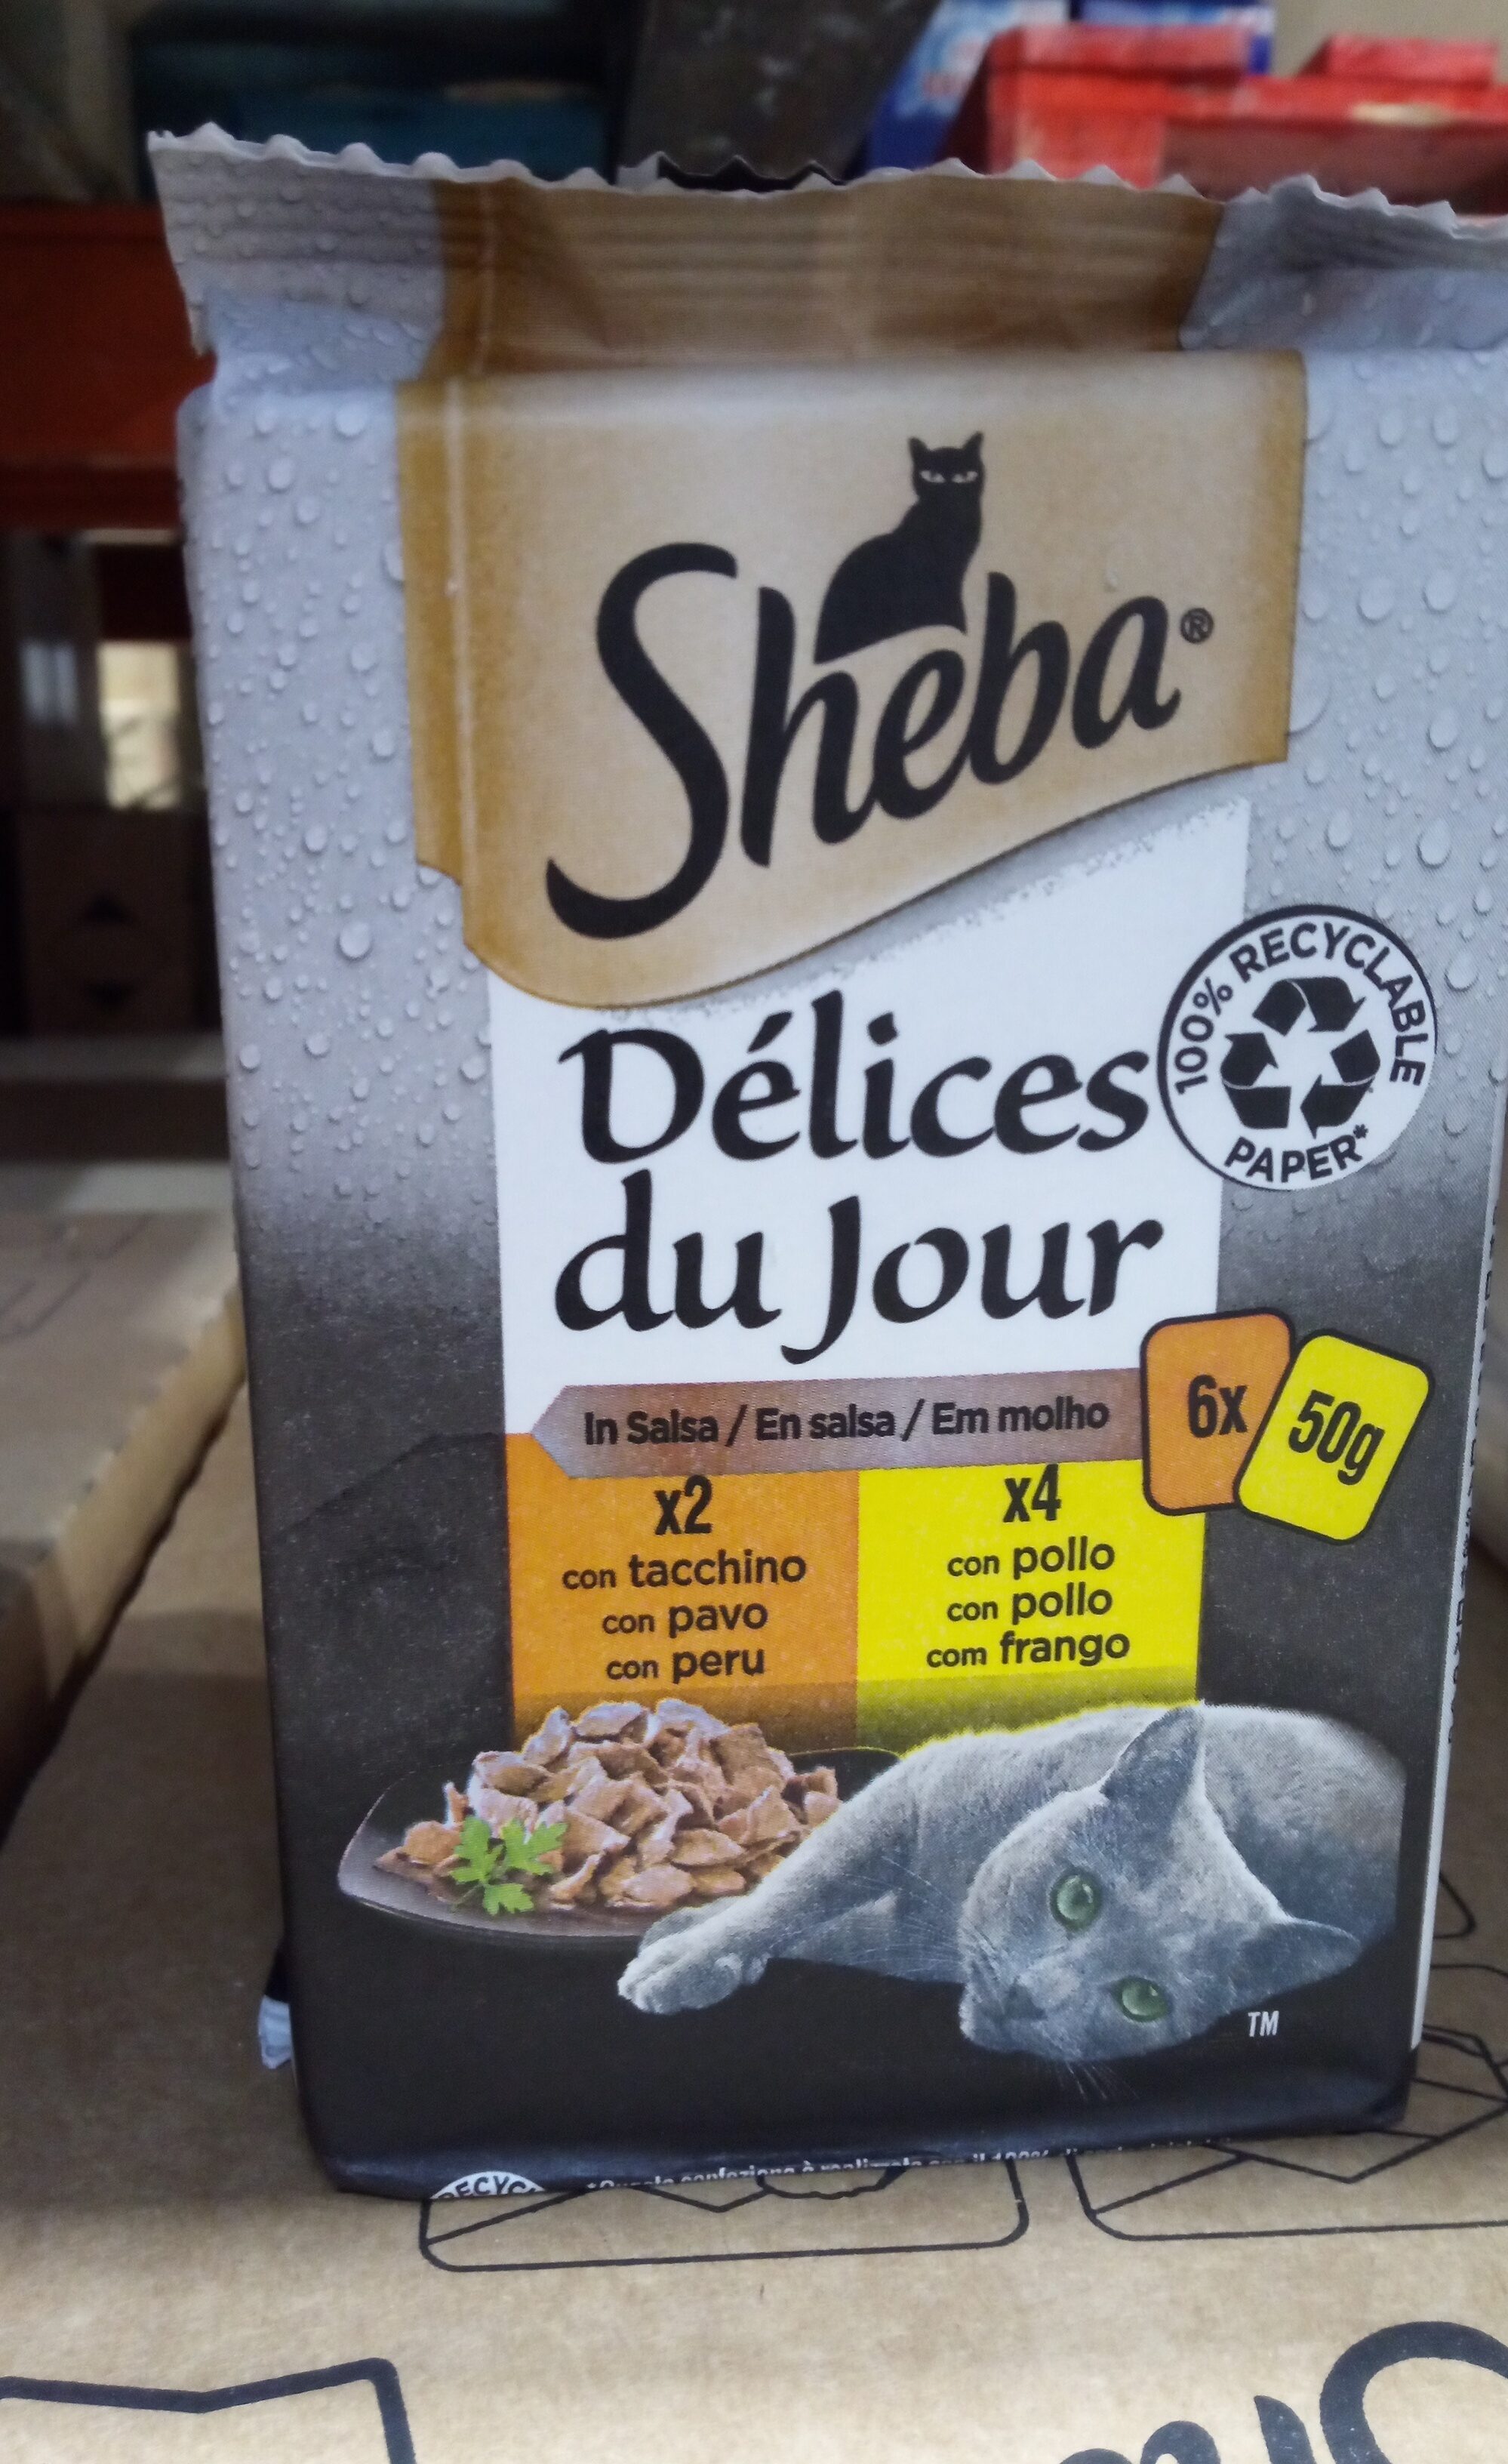 Sheba delicias pavo/pollo - Product - es